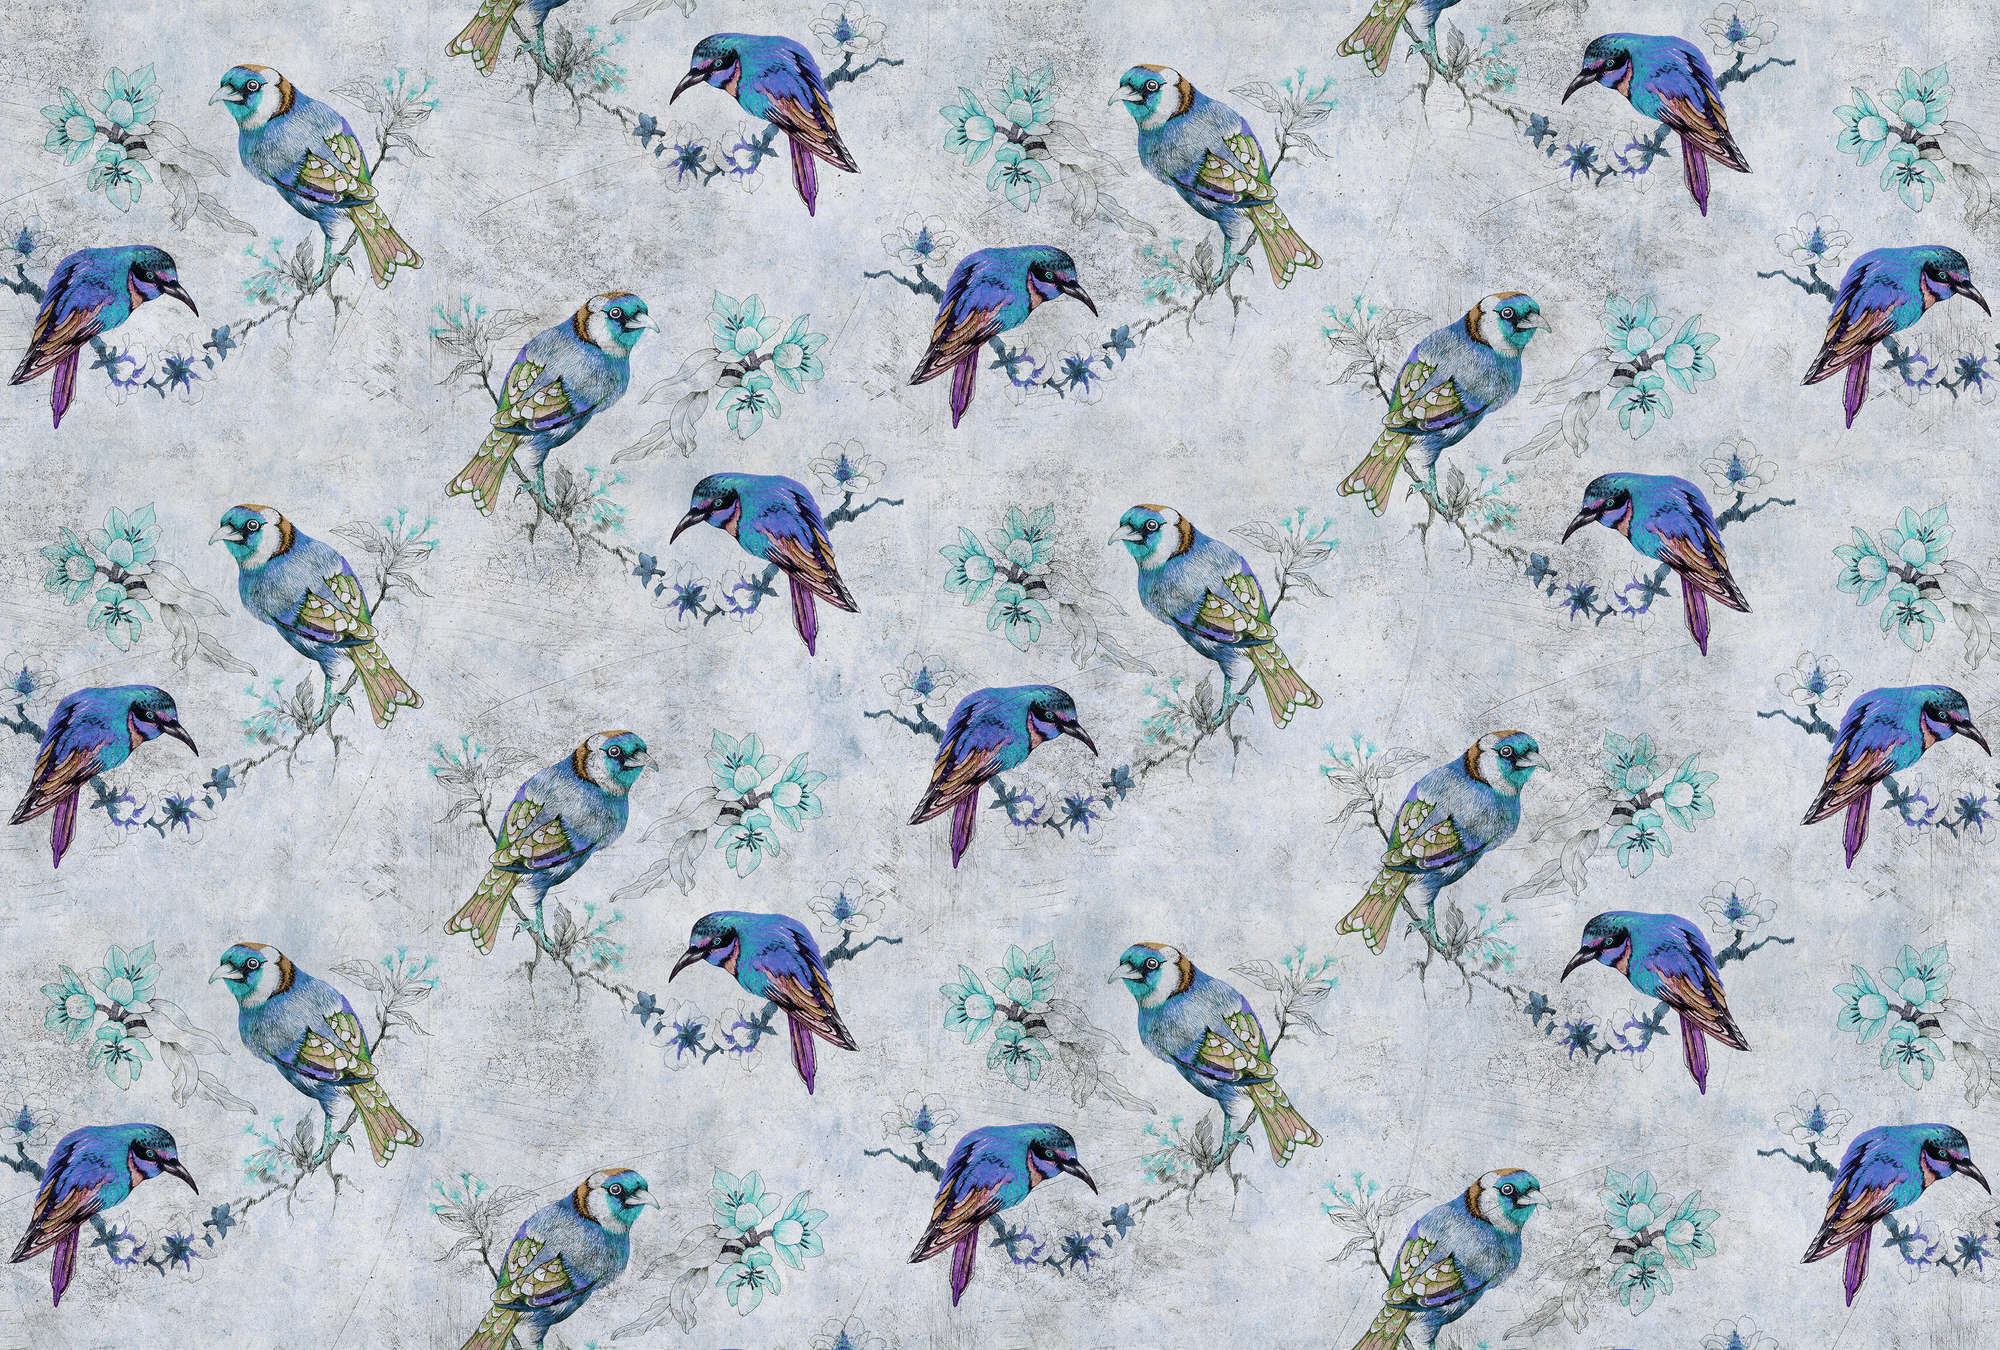             Love birds 1 - Fotomural con motivo de pájaros en estilo de dibujo en estructura rayada - Azul, Gris | Estructura no tejida
        